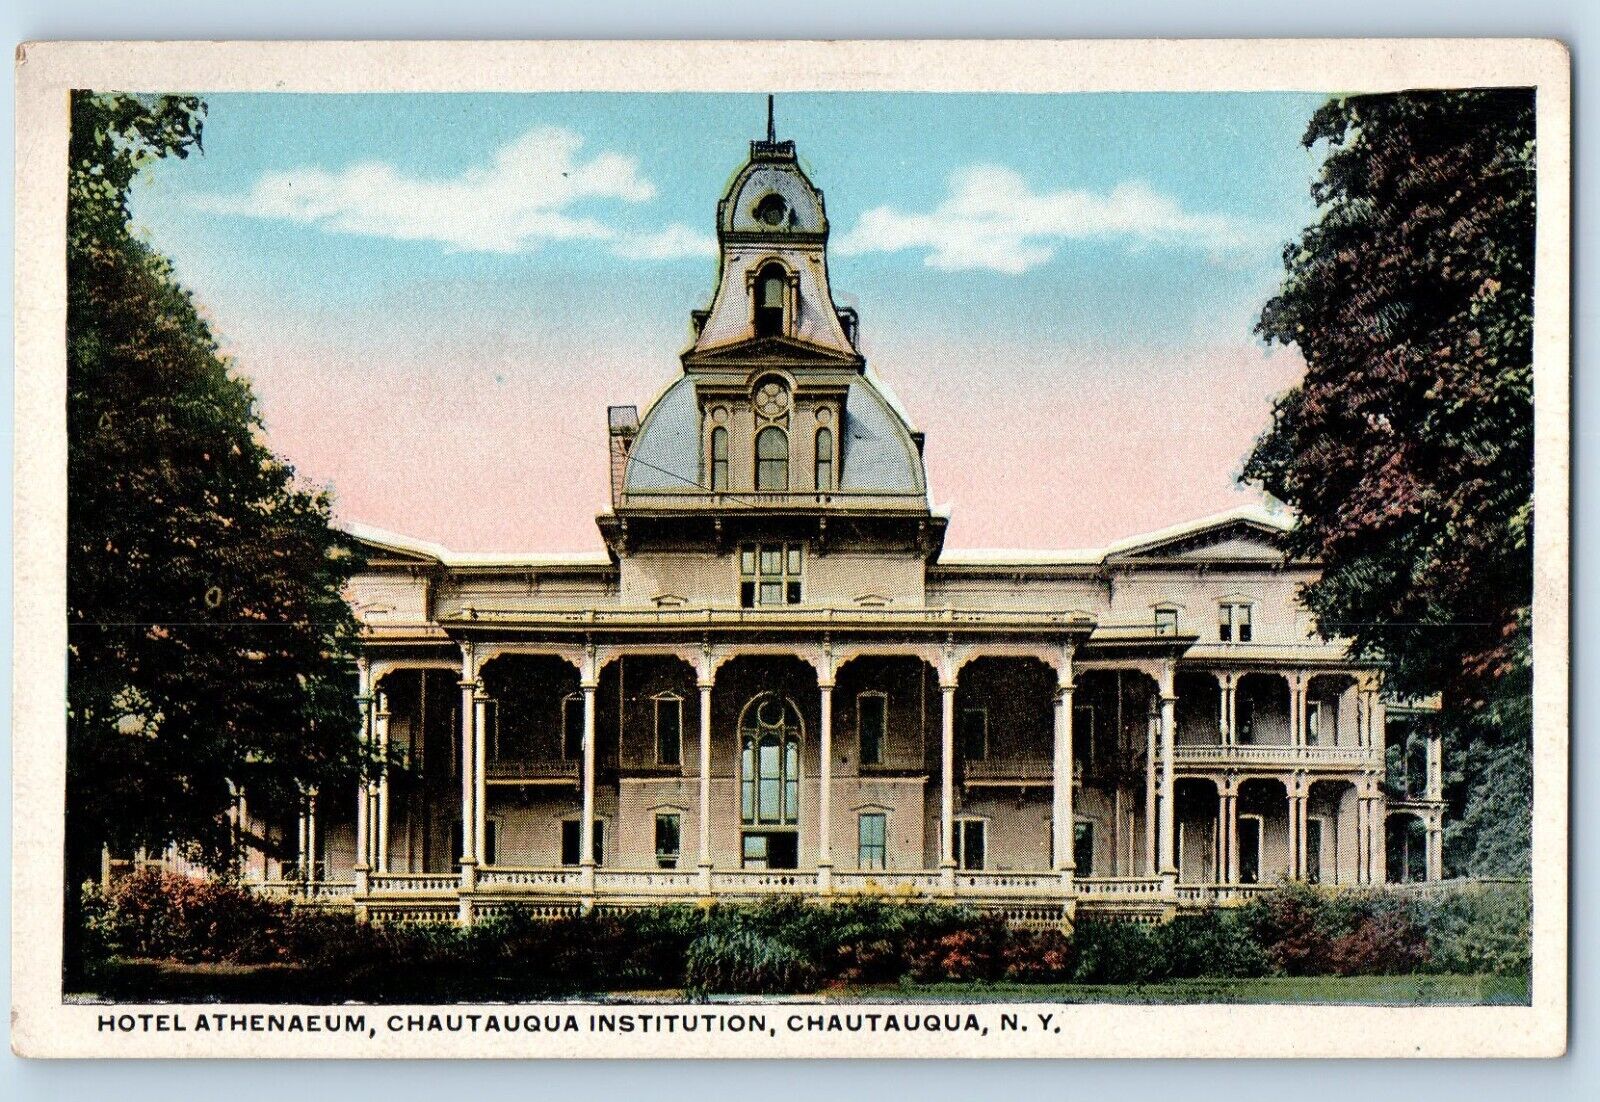 Chautauqua New York Postcard Hotel Athenaeum Chautauqua Institution 1920 Antique